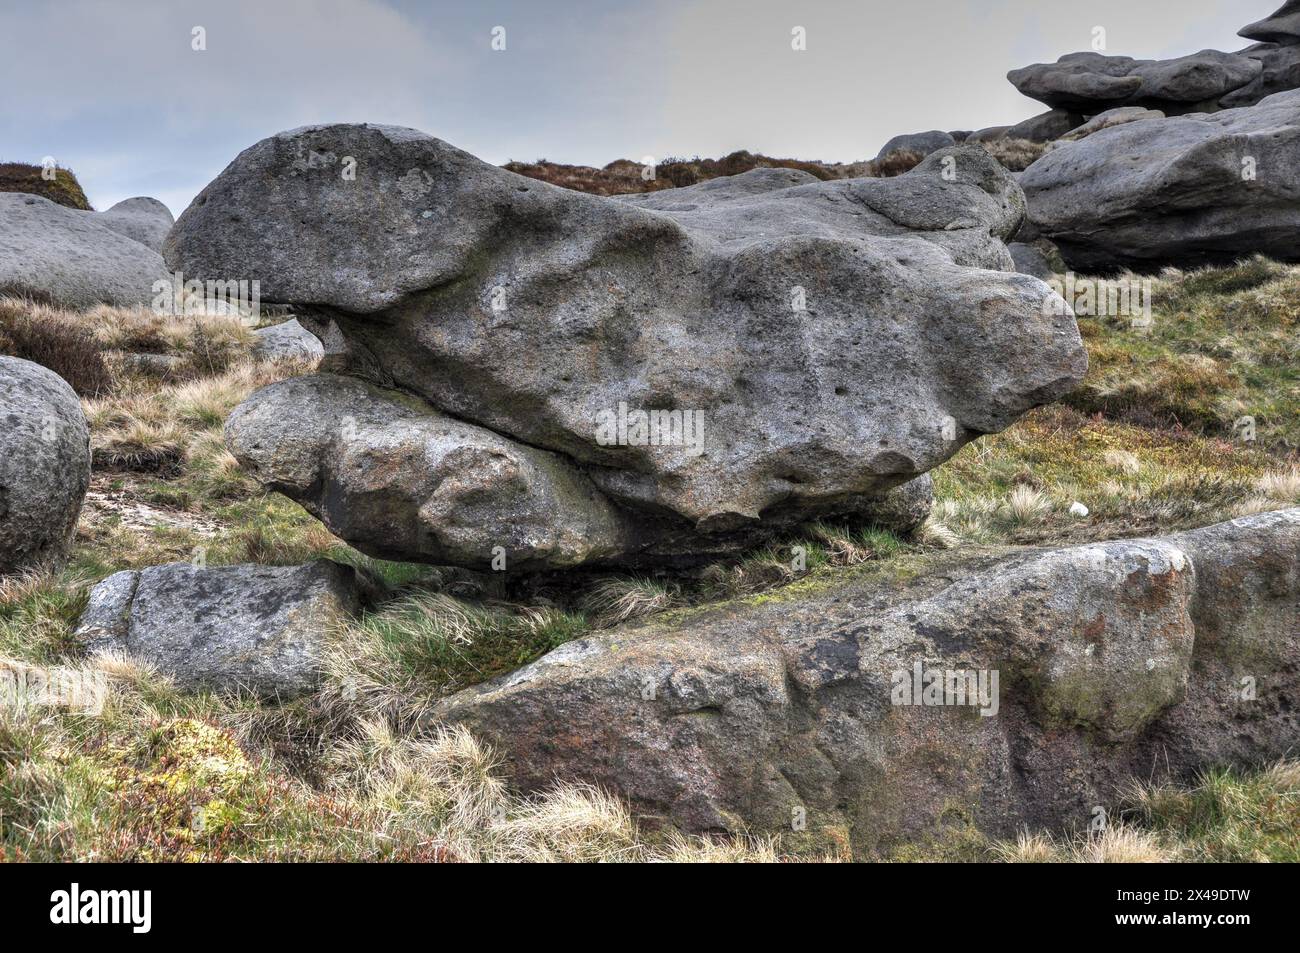 Massive, seltsame, erodierte Felsformation, die wie ein Brutvogel aussieht, in der Gegend, die als Woolpacks am Kinder Scout im Peak District bekannt ist Stockfoto